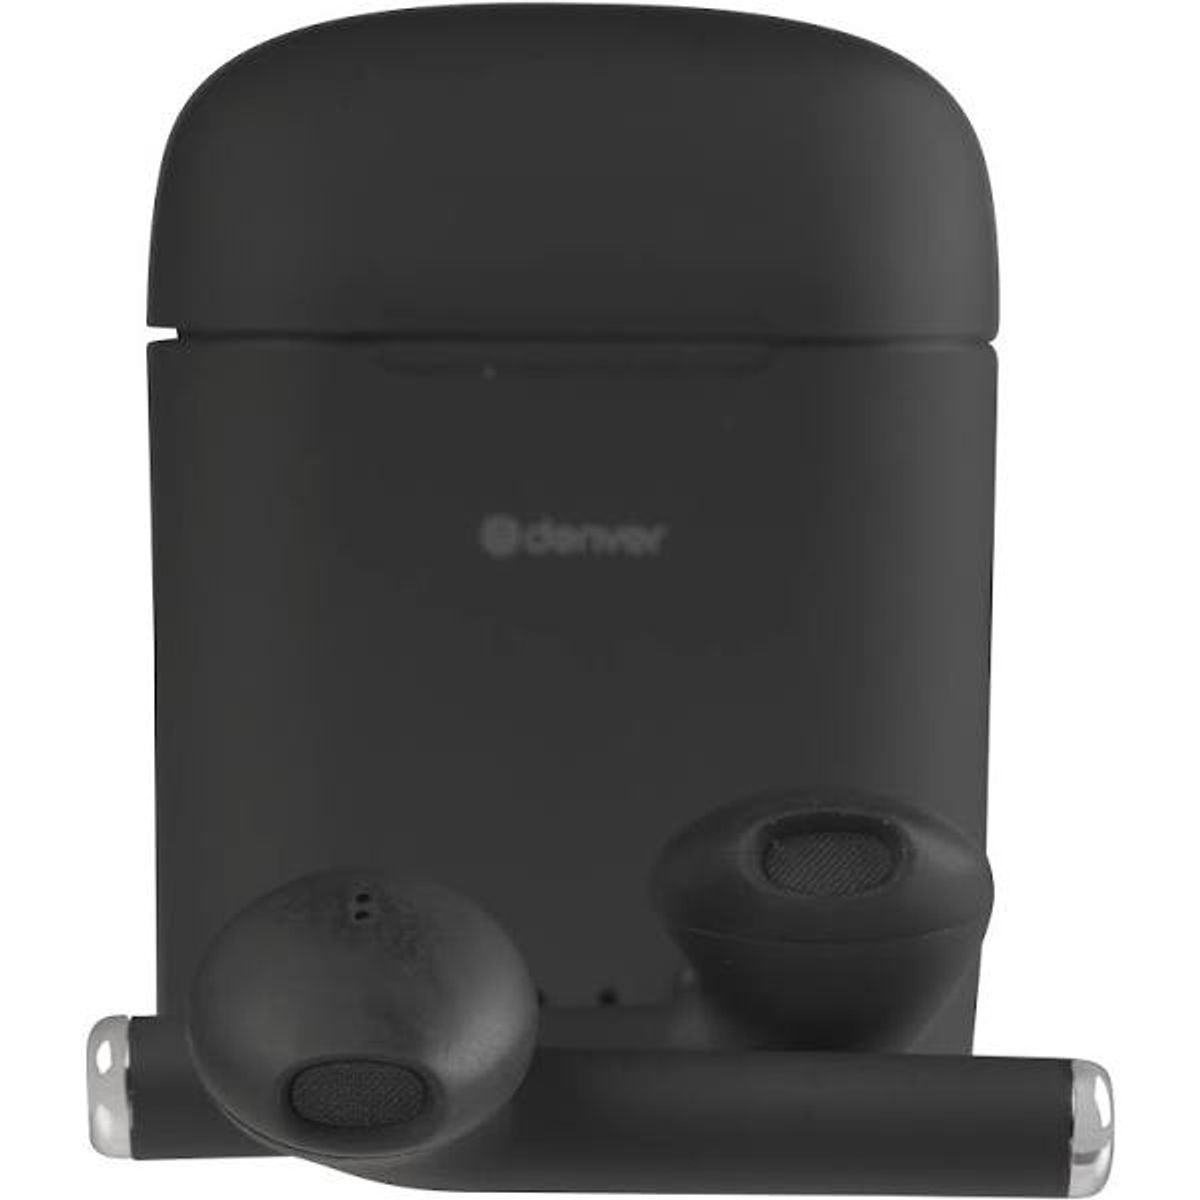 DENVER TWE-46 Schwarz, Bluetooth In-ear Kopfhörer schwarz